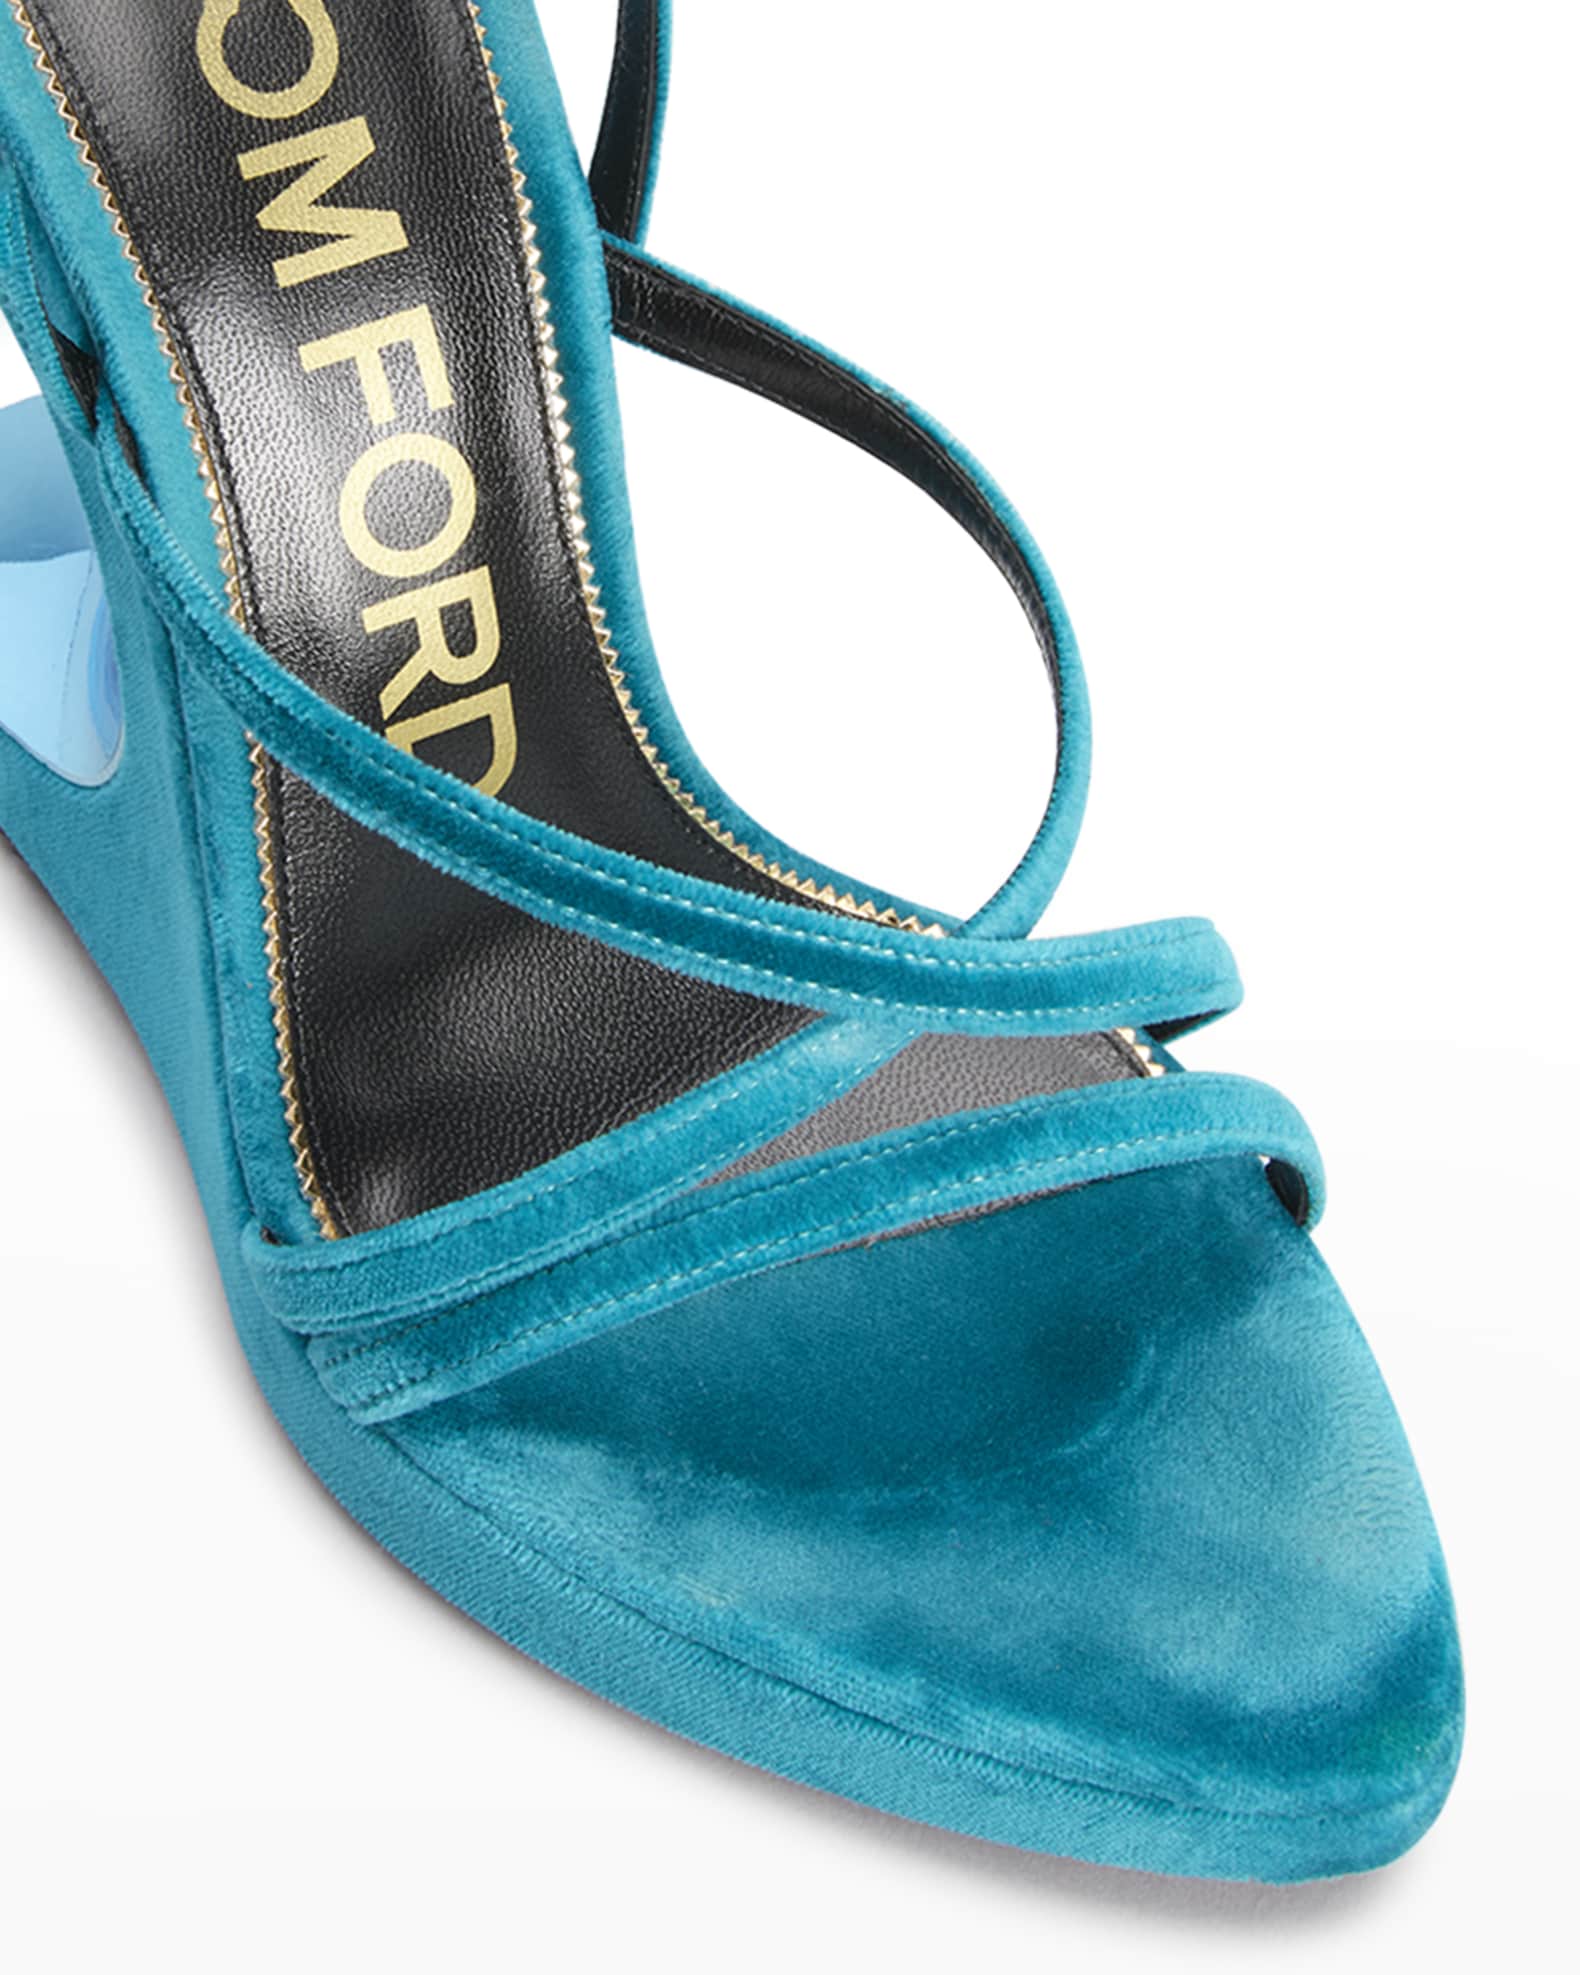 TOM FORD Velvet Ankle-Strap Wedge Sandals | Neiman Marcus